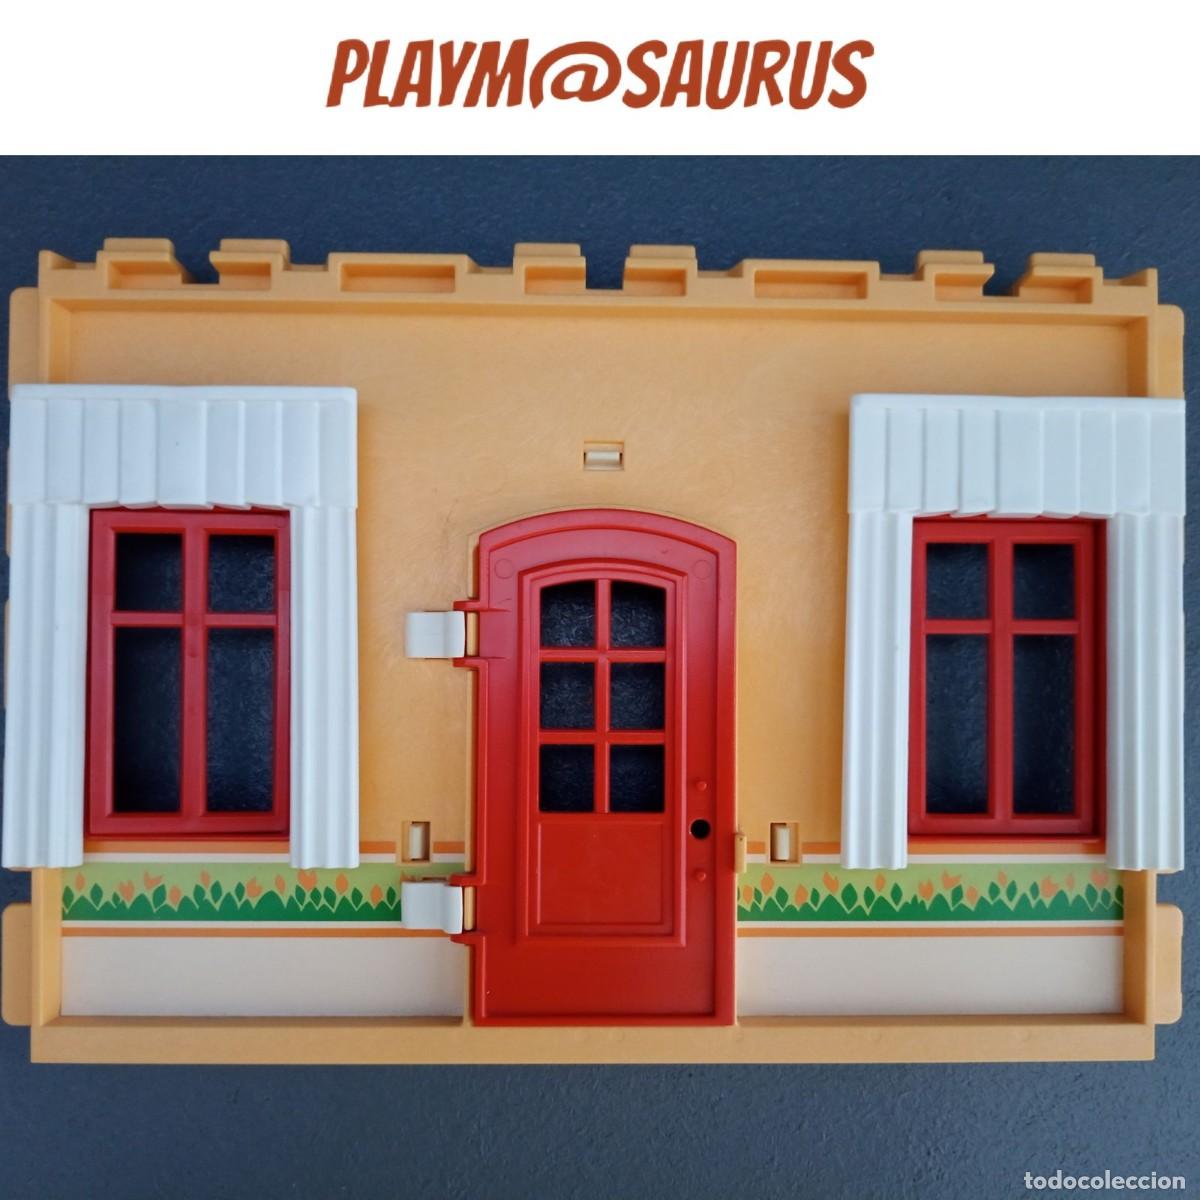 pared puerta cortinas casa victoriana m Comprar Playmobil de segunda mano en todocoleccion - 365967376